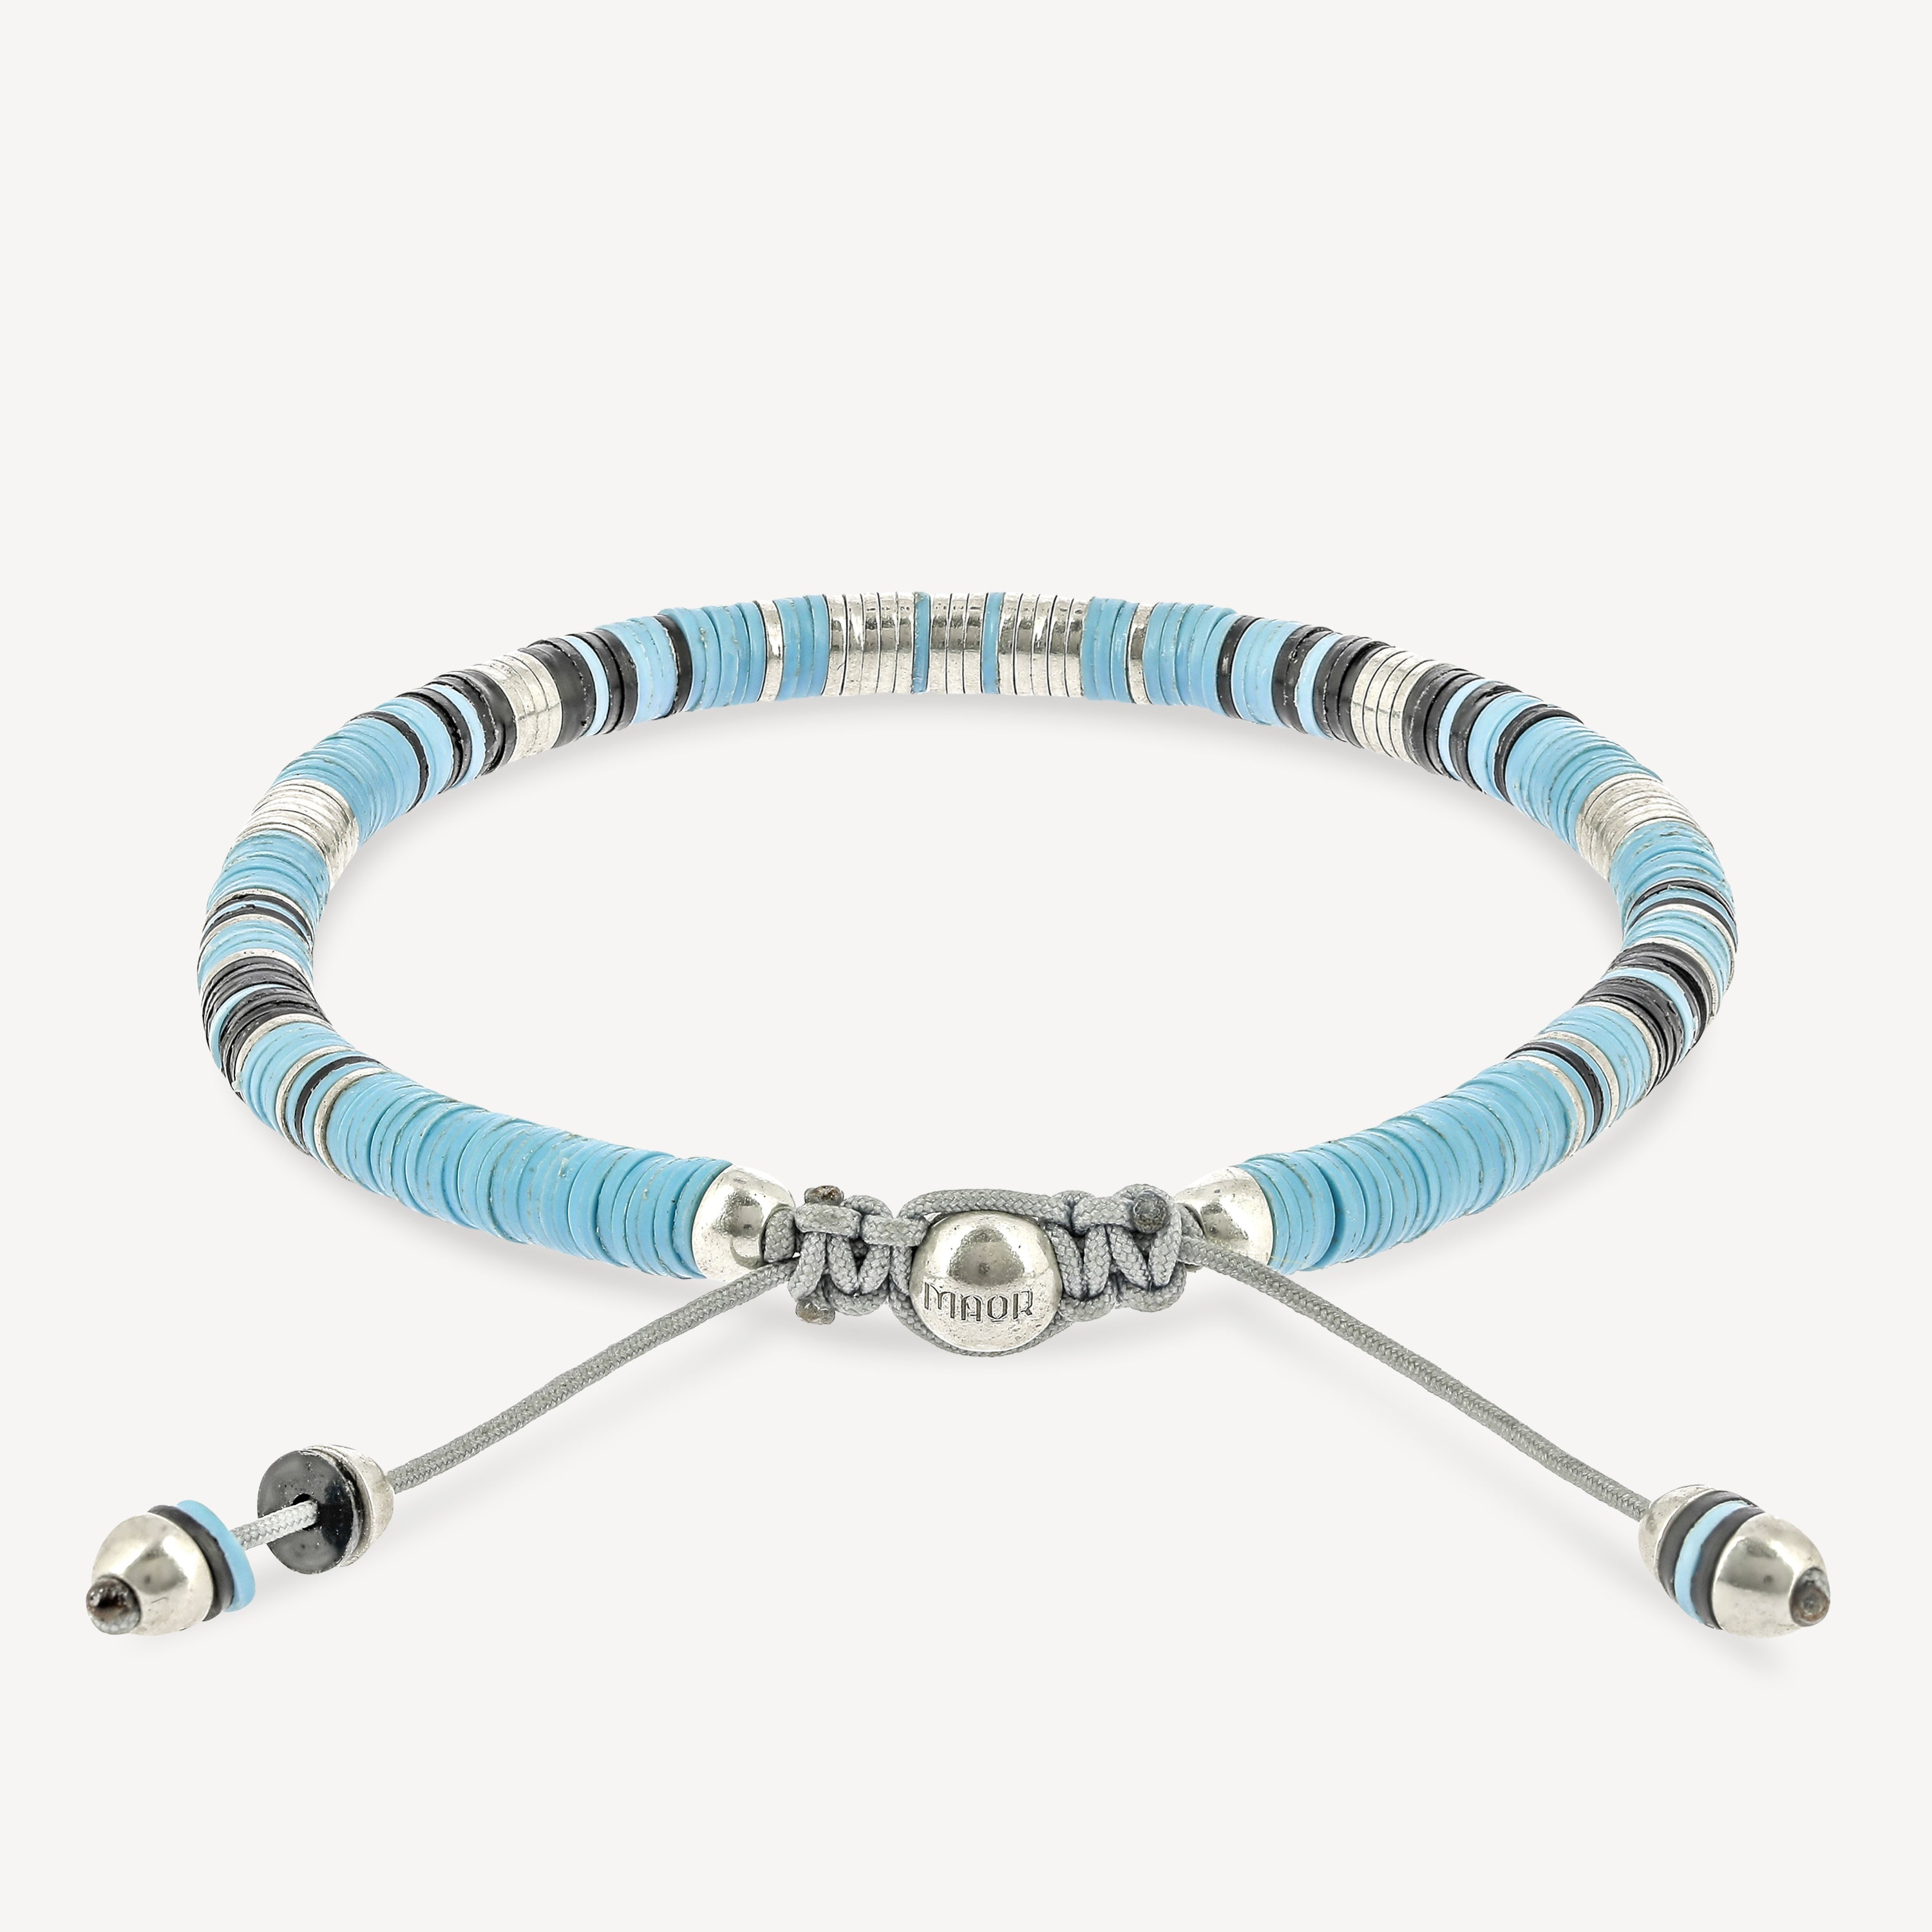 Rizon Perlen mit babyblauem Muster und silbernen Scheiben